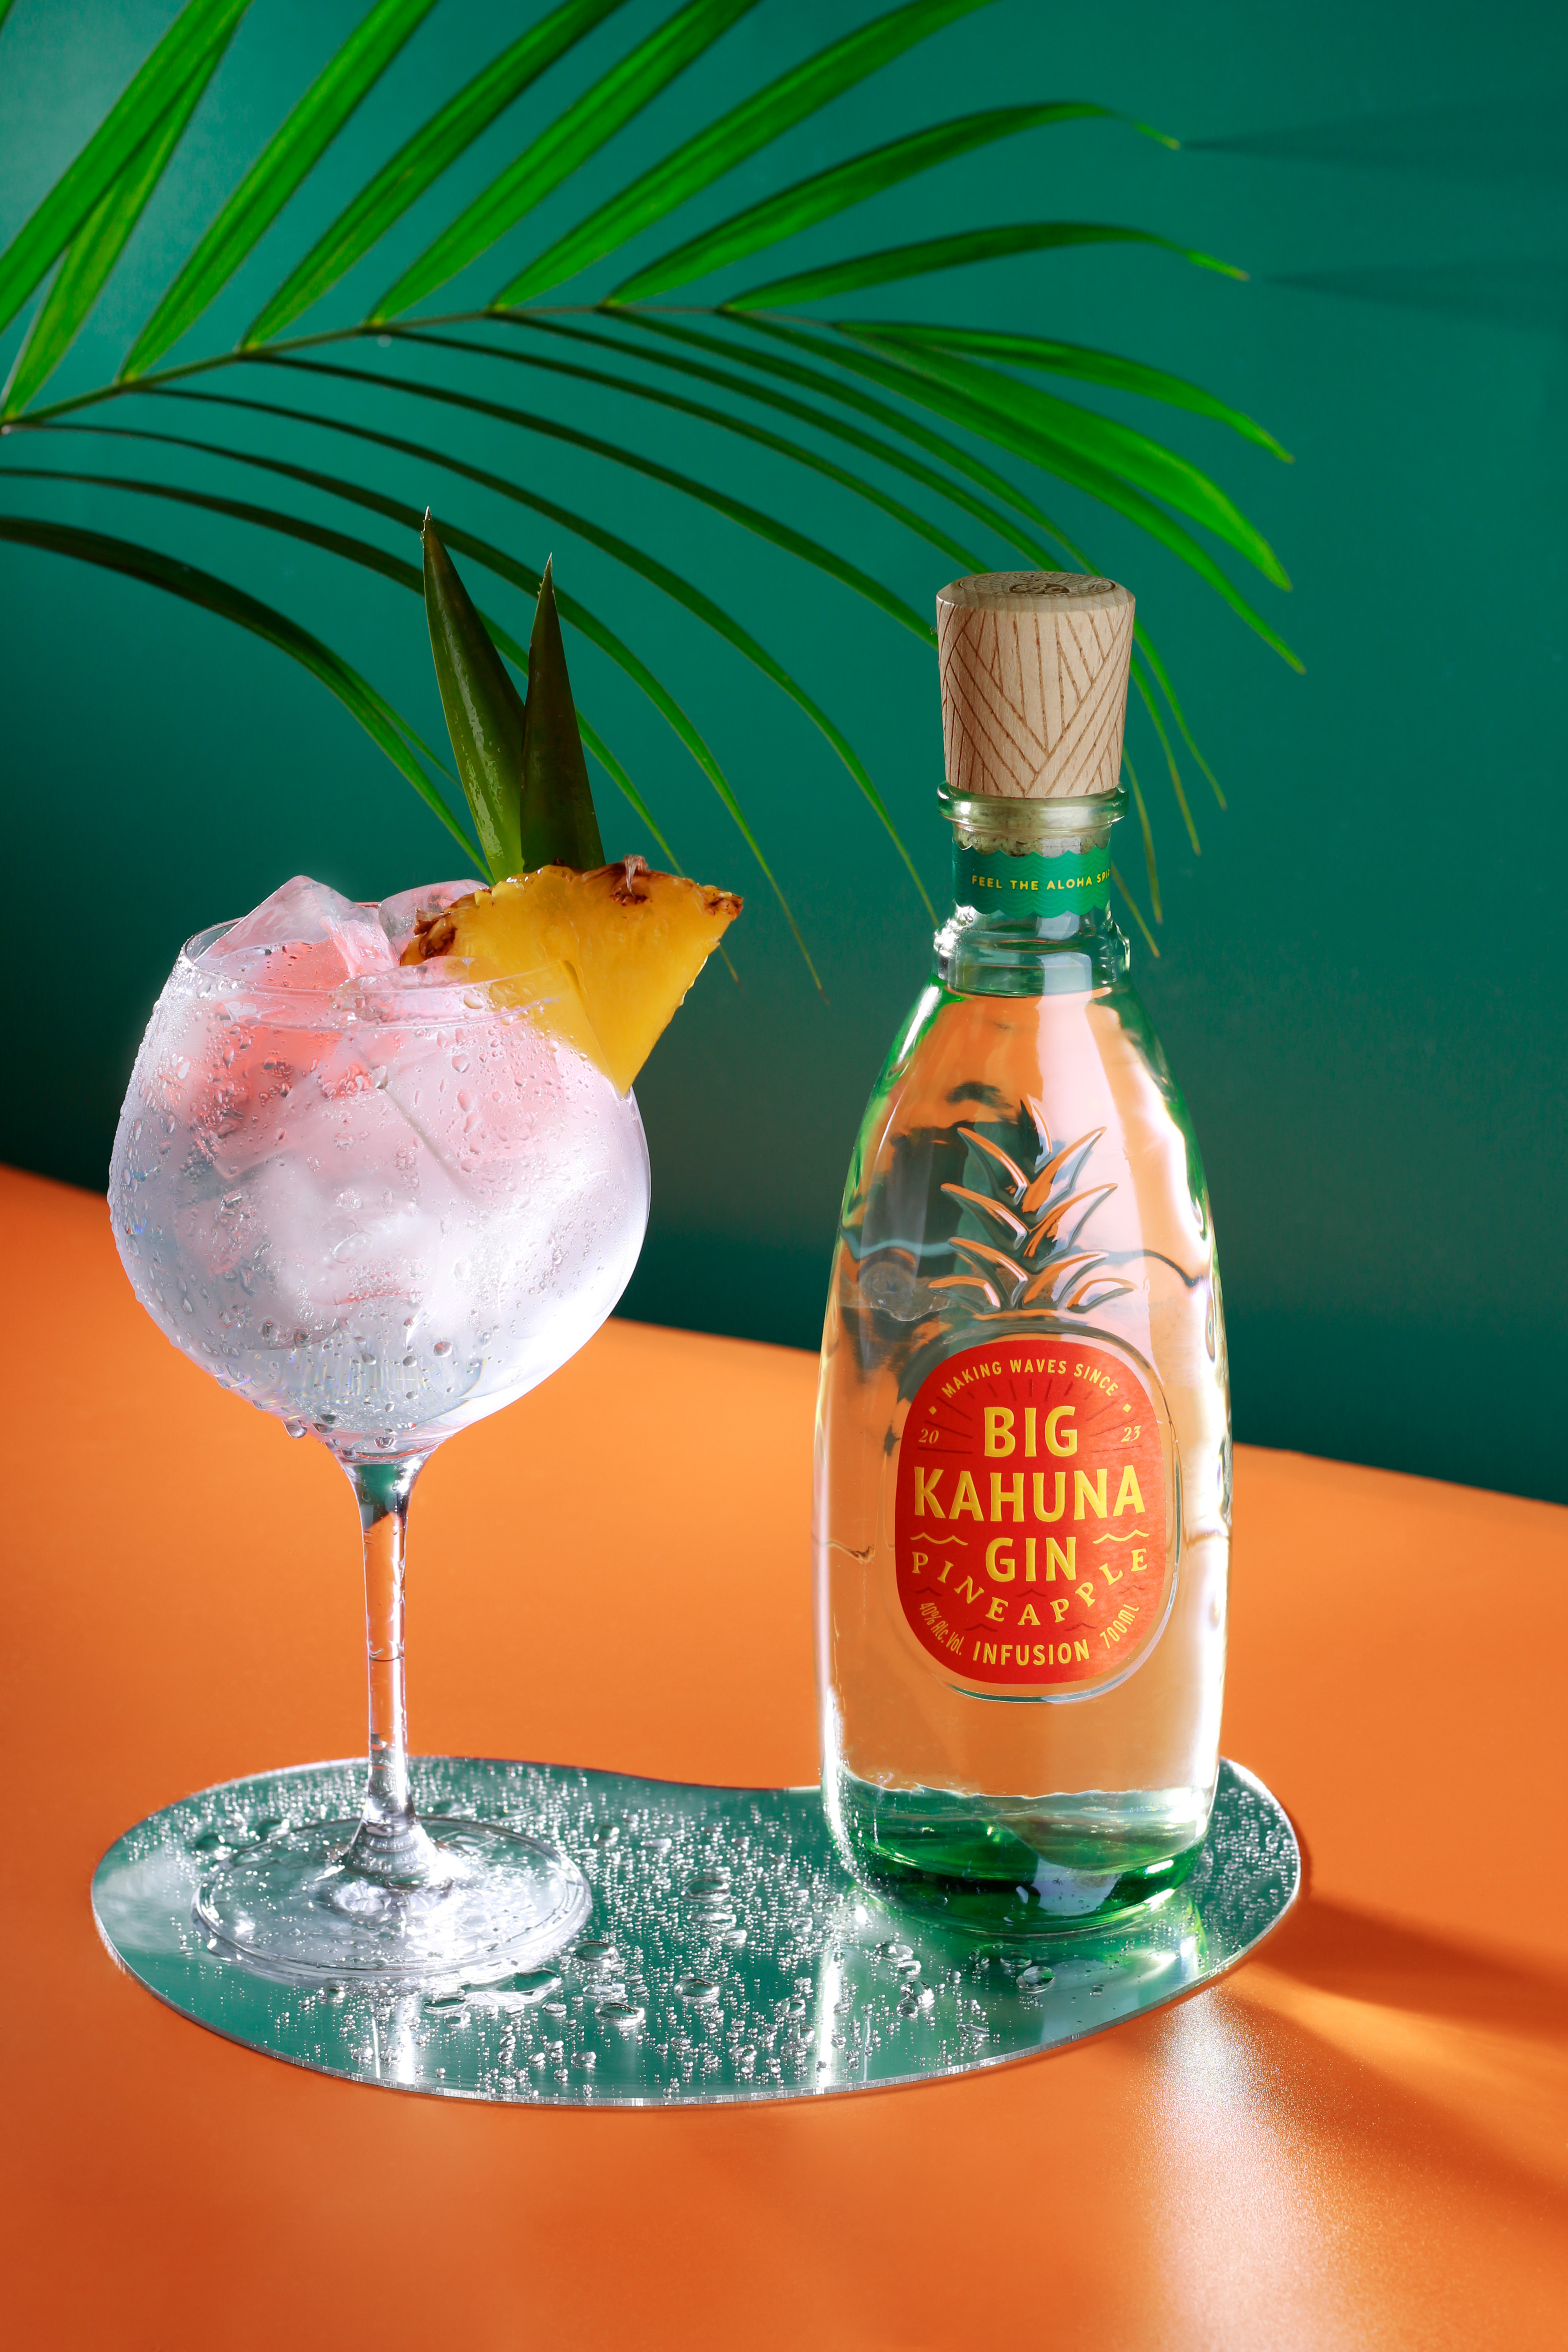 Ochutený Big Pineapple gin Kahuna Gin -